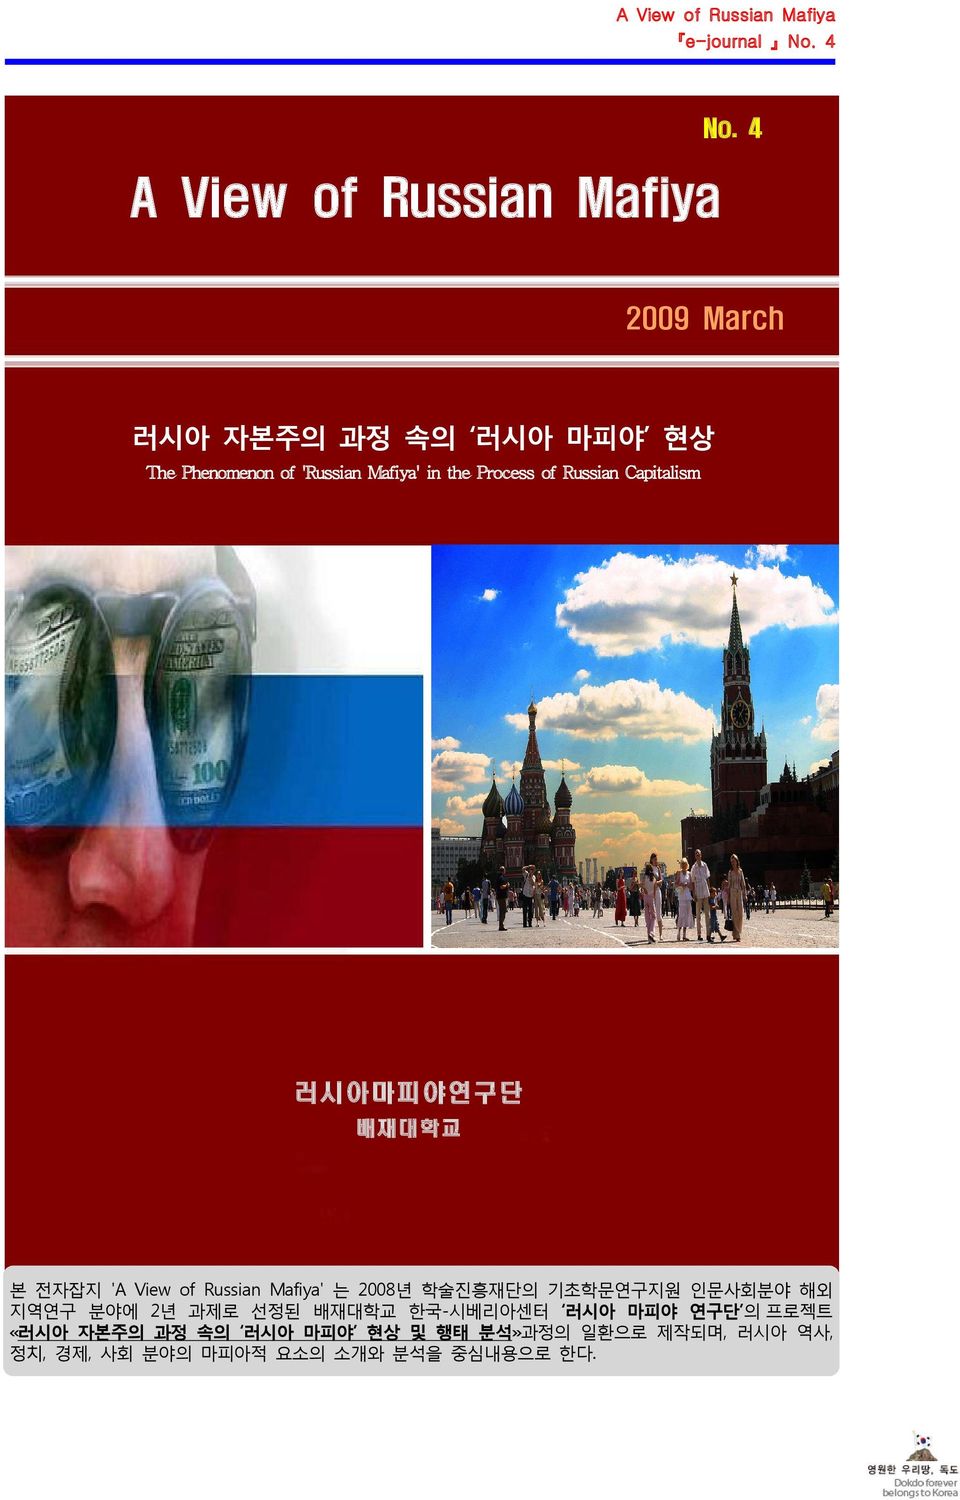 Russian Capitalism 러시아마피야연구단 배재대학교 본 전자잡지 'A View of Russian Mafiya' 는 2008년 학술진흥재단의 기초학문연구지원